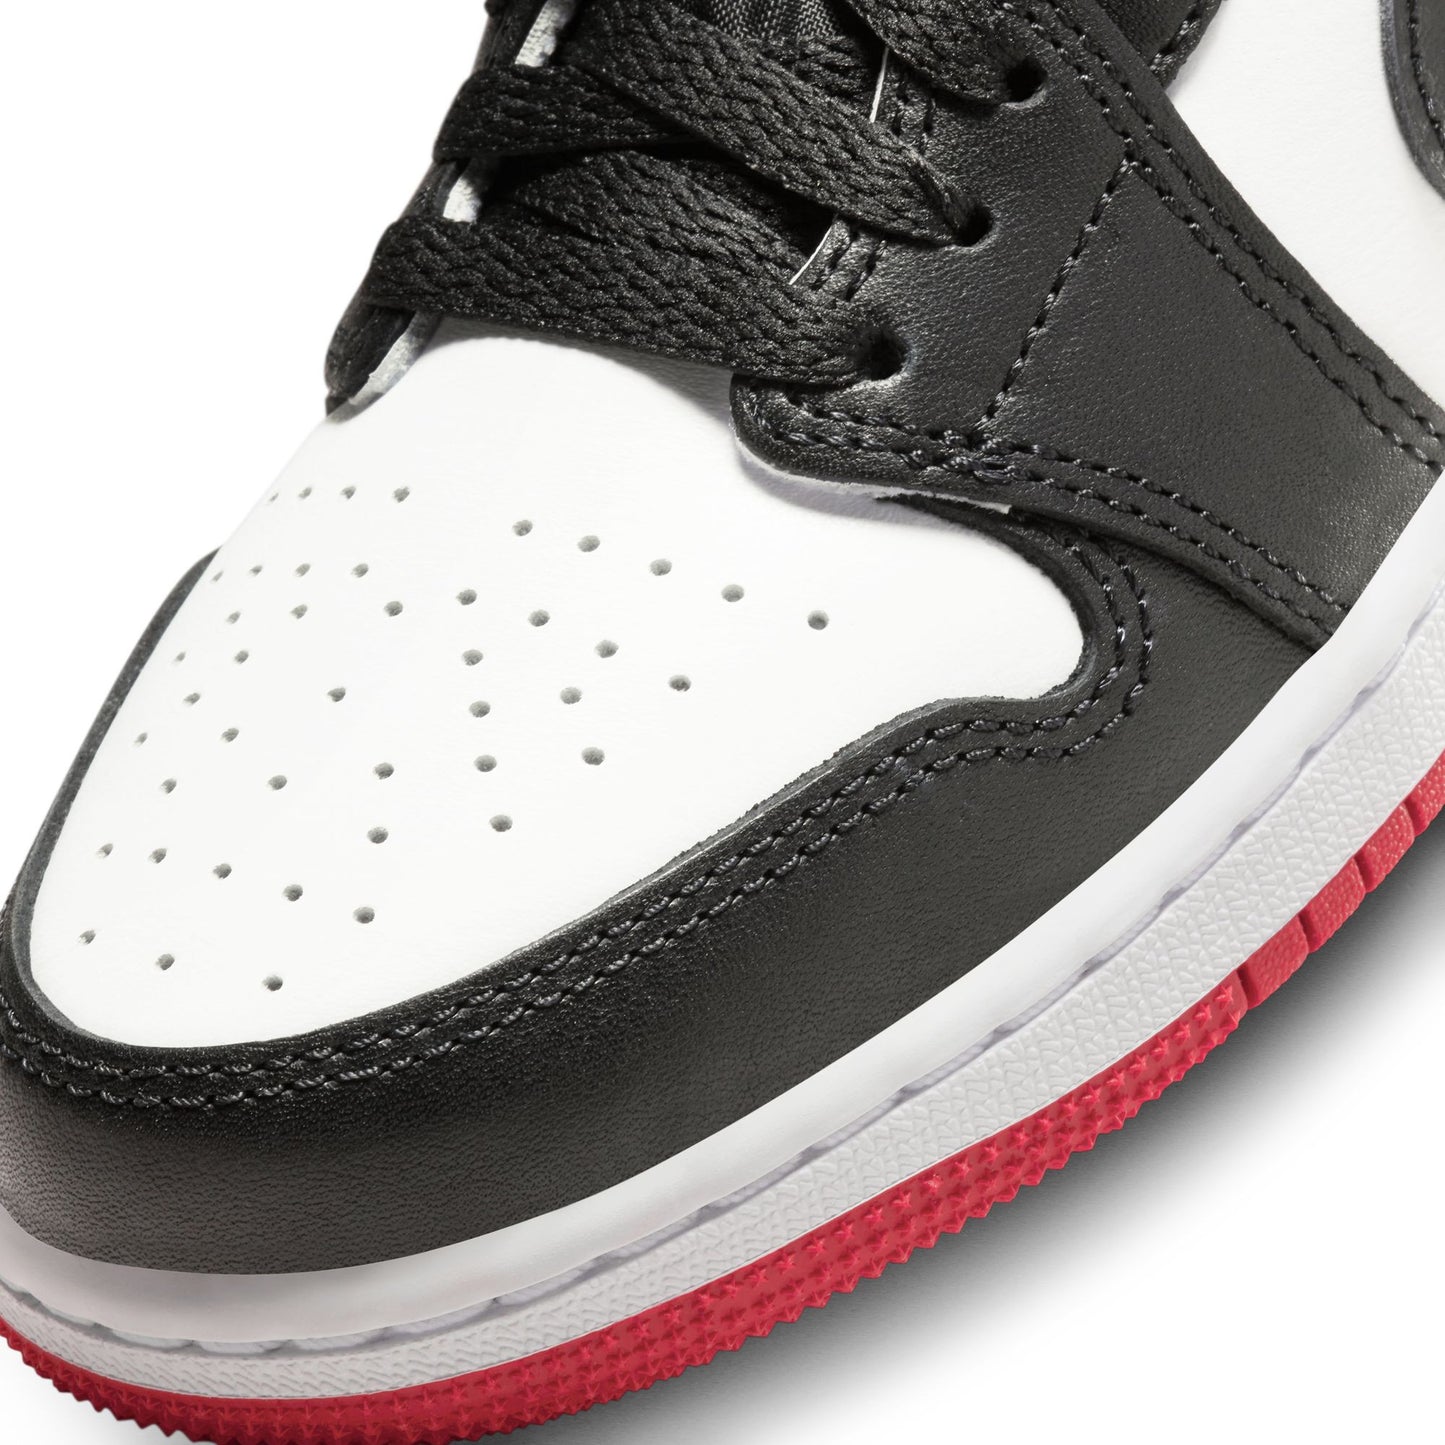 Air Jordan 1 Low OG GS "Black Toe" - CZ0858-106